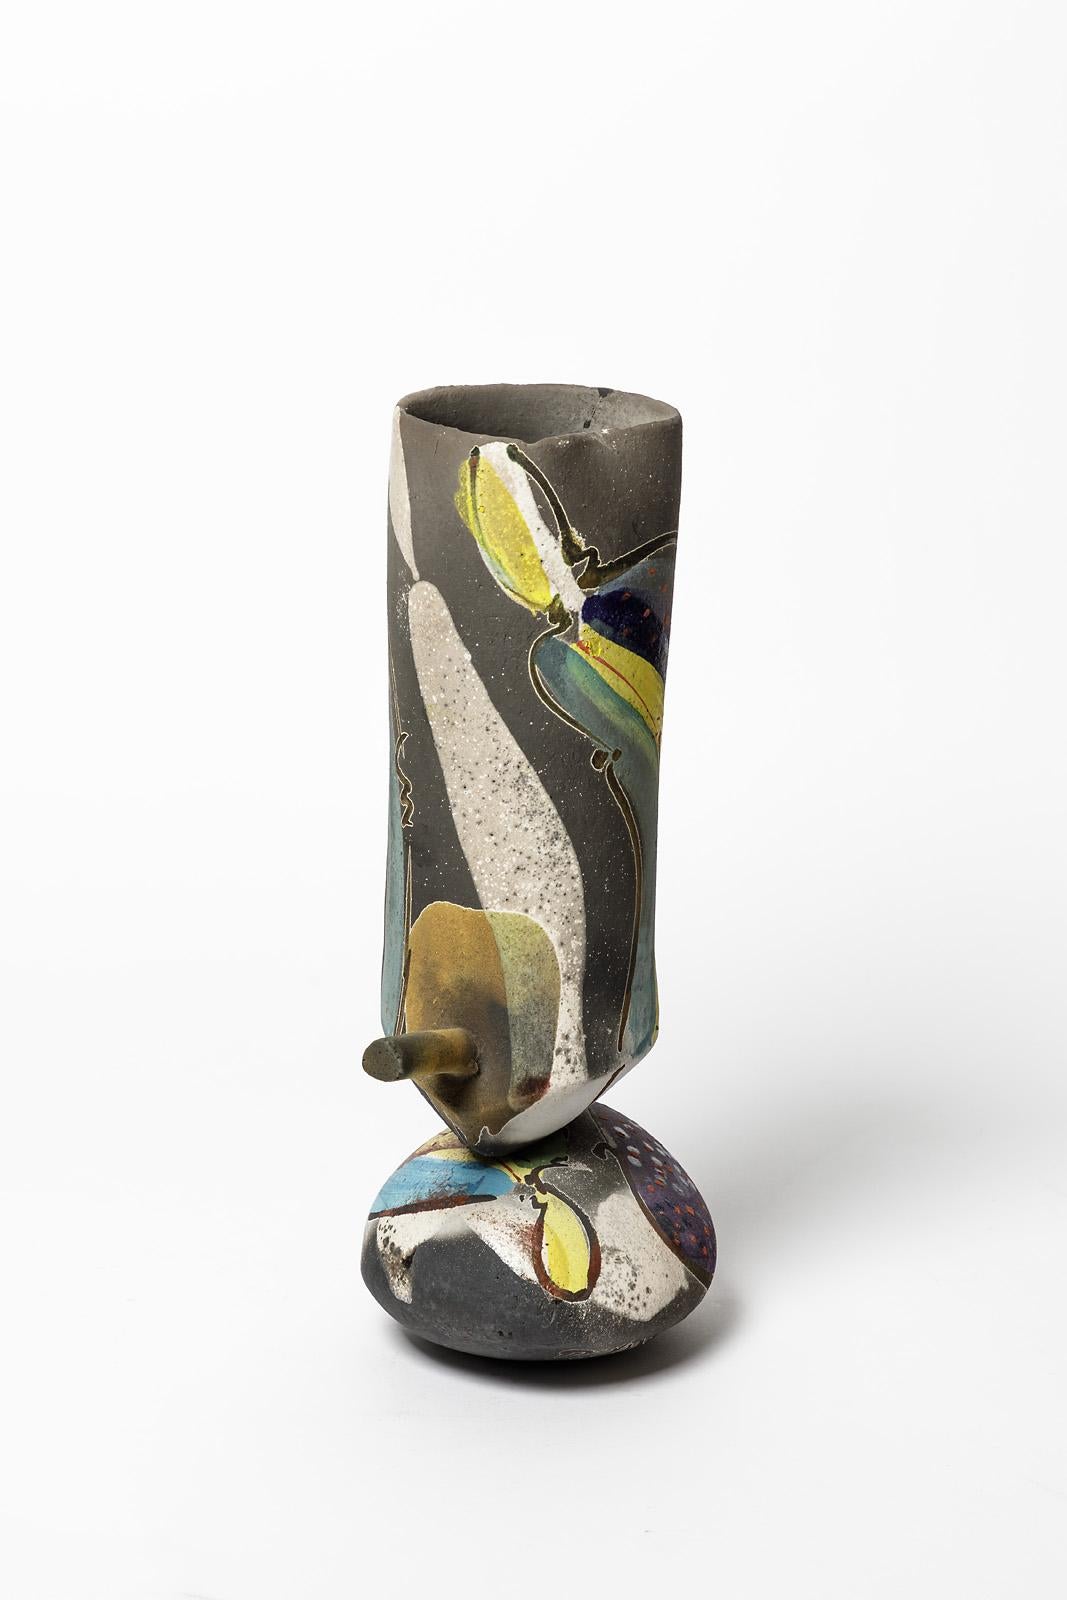 Keramikvase mit abstraktem Glasurdekor von David Miller (1942-2008)
Perfekter Originalzustand.
Einzigartiges Stück.
Unter dem Sockel signiert,
Um 1990.


 